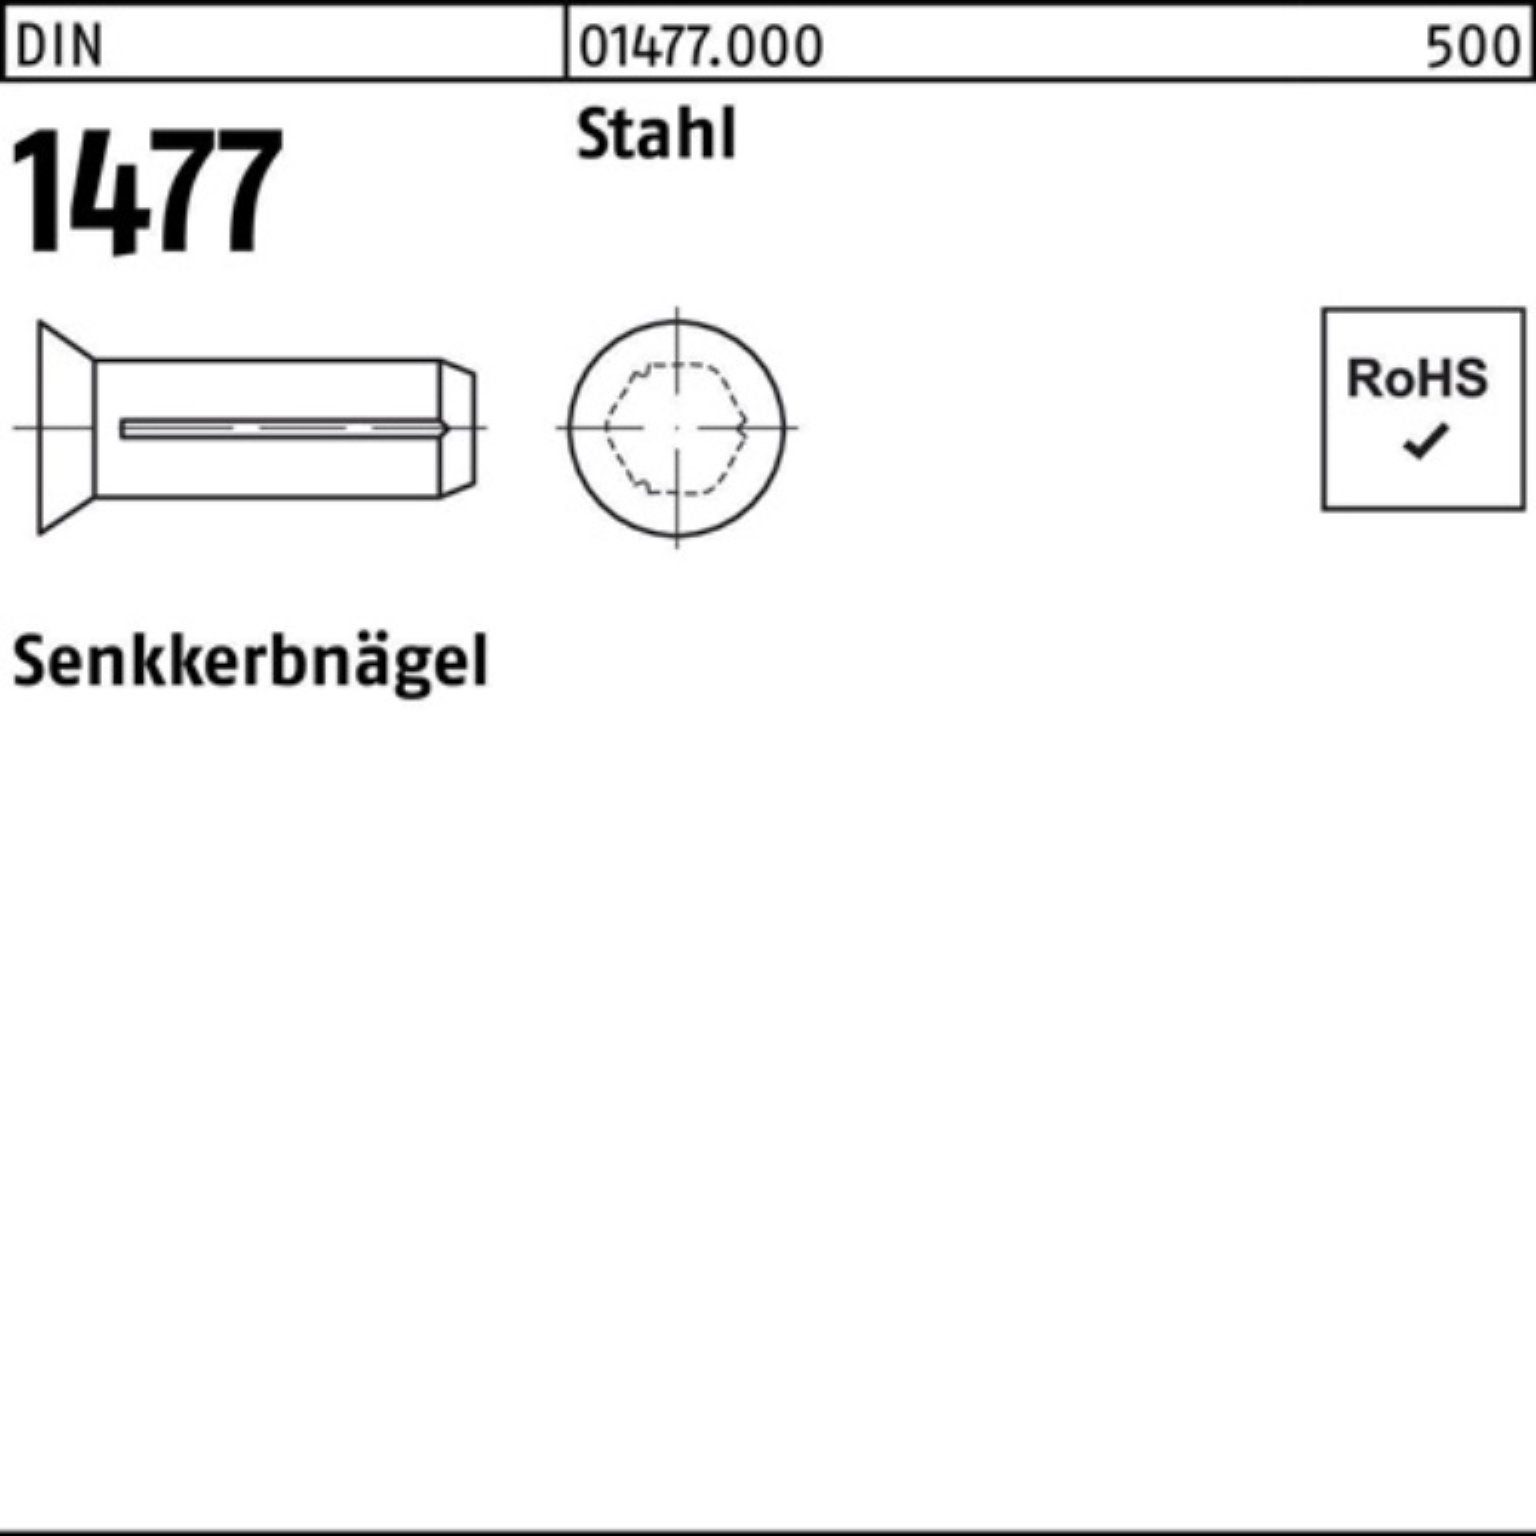 1477 2x 1477 Stahl Pack Reyher Stahl Senkkerbnagel Nagel Stück DIN 500er 8 500 DIN